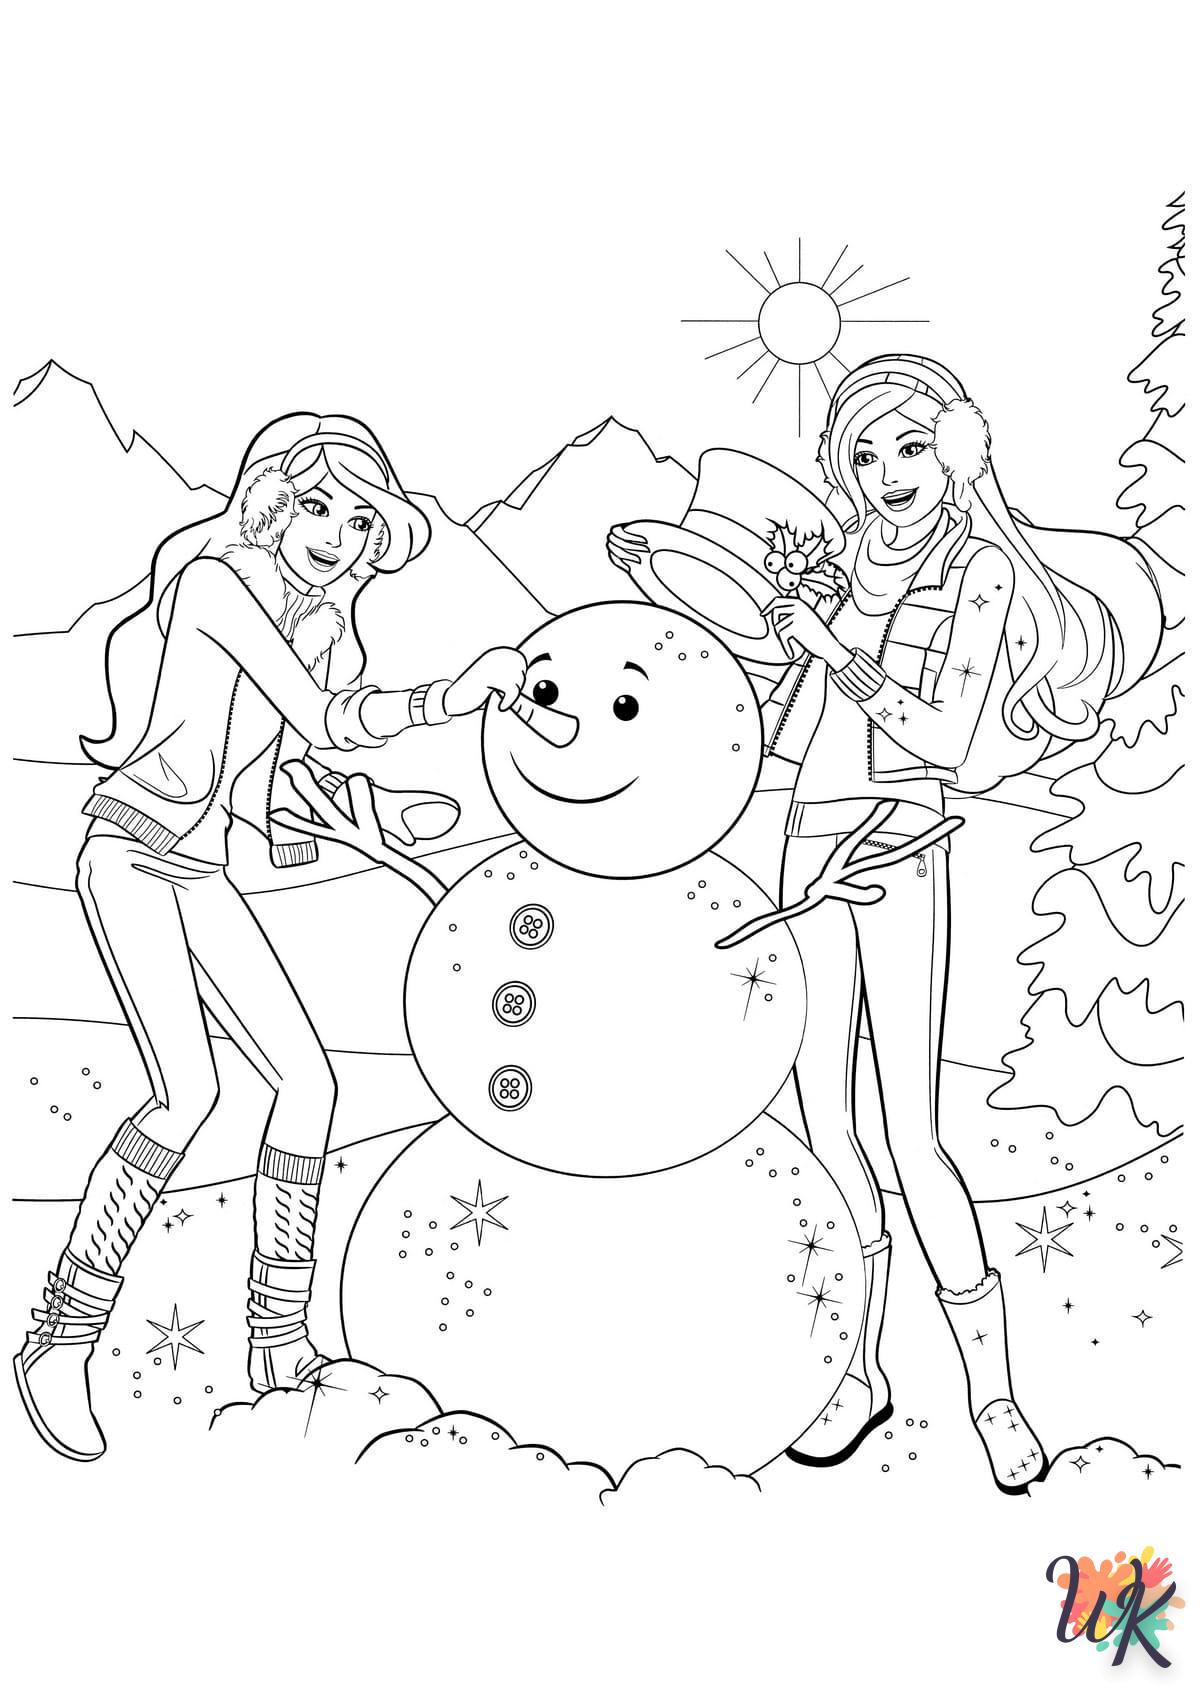 Dibujos para Colorear Navidad de dibujos animados 45